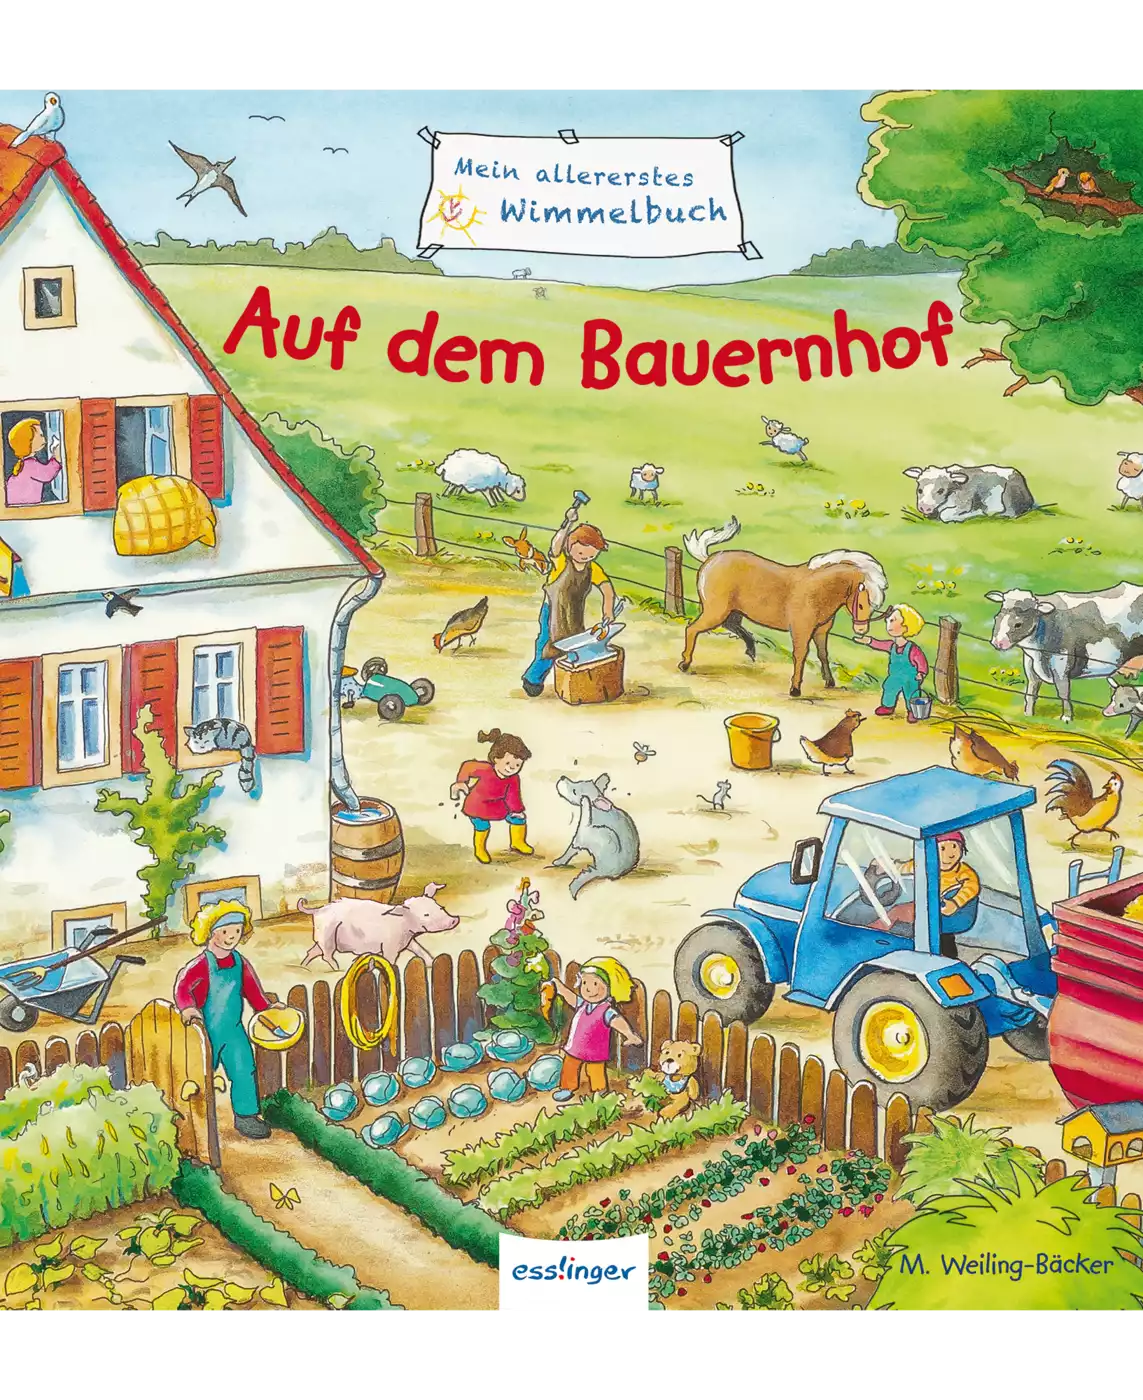 Mein allererstes Wimmelbuch Bauernhof ess!inger 2000571212244 3